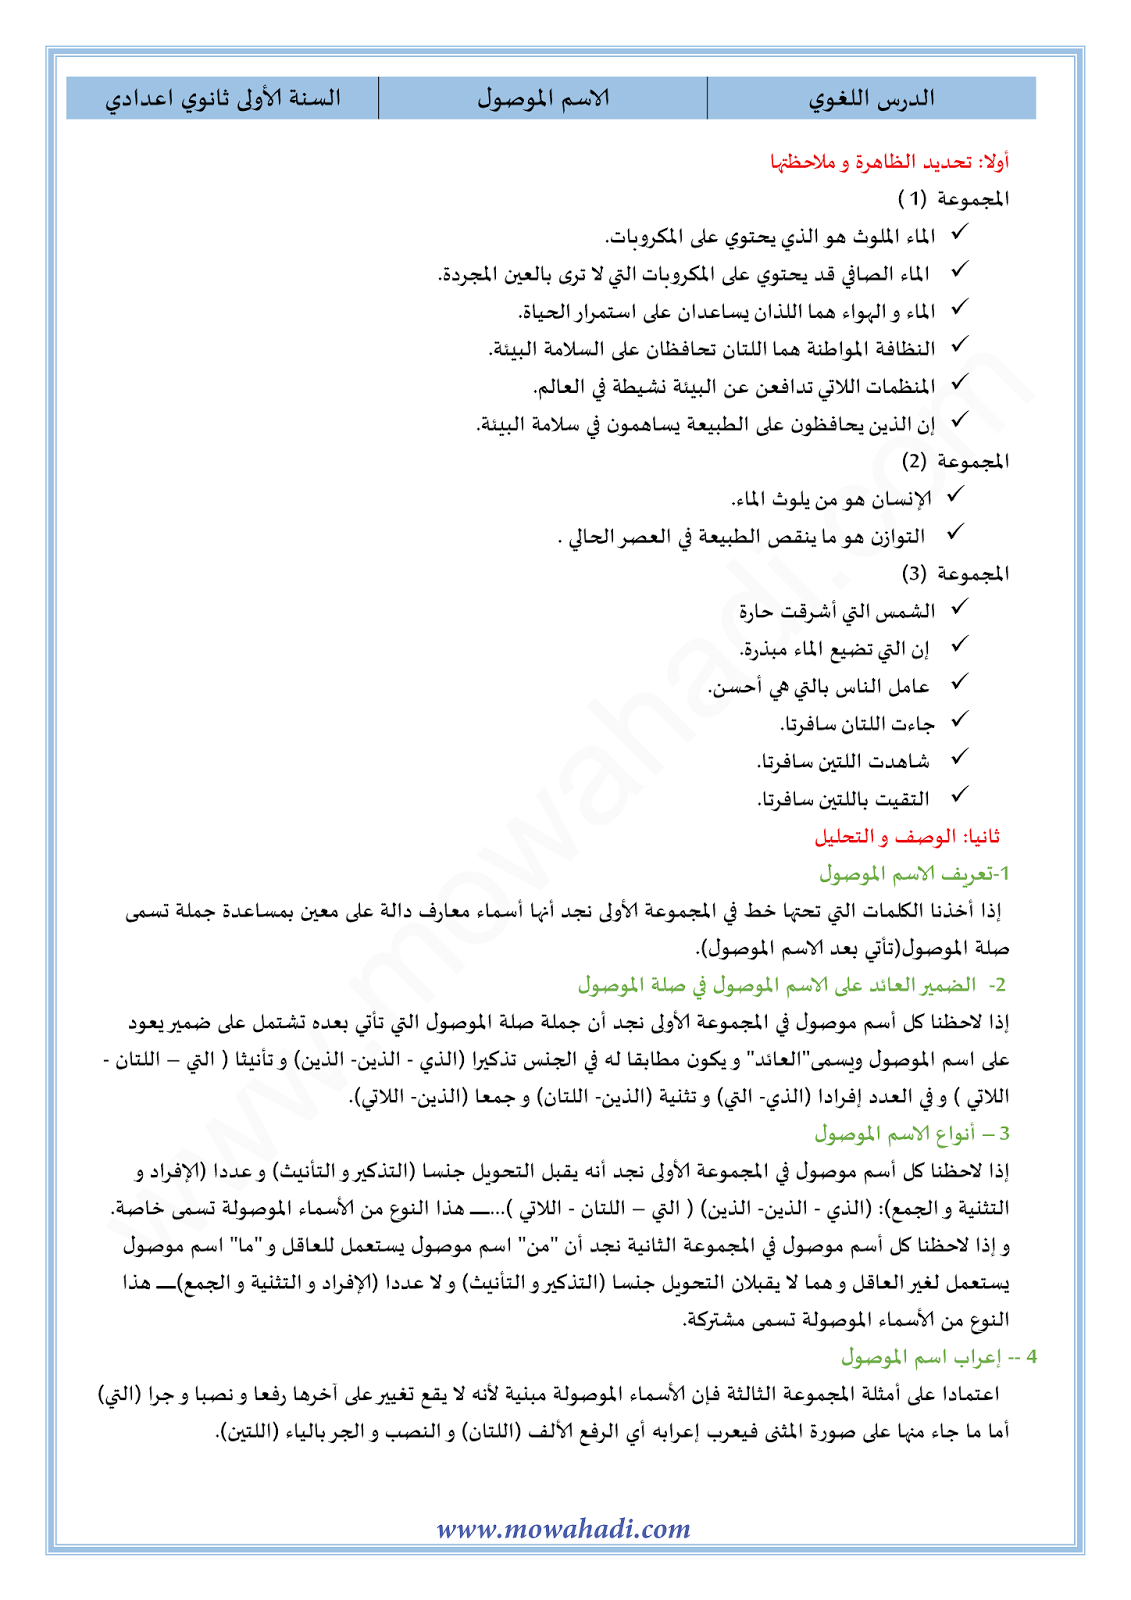 الدرس اللغوي الاسم الموصول للسنة الأولى اعدادي في مادة اللغة العربية 17-cours-dars-loghawi1_001